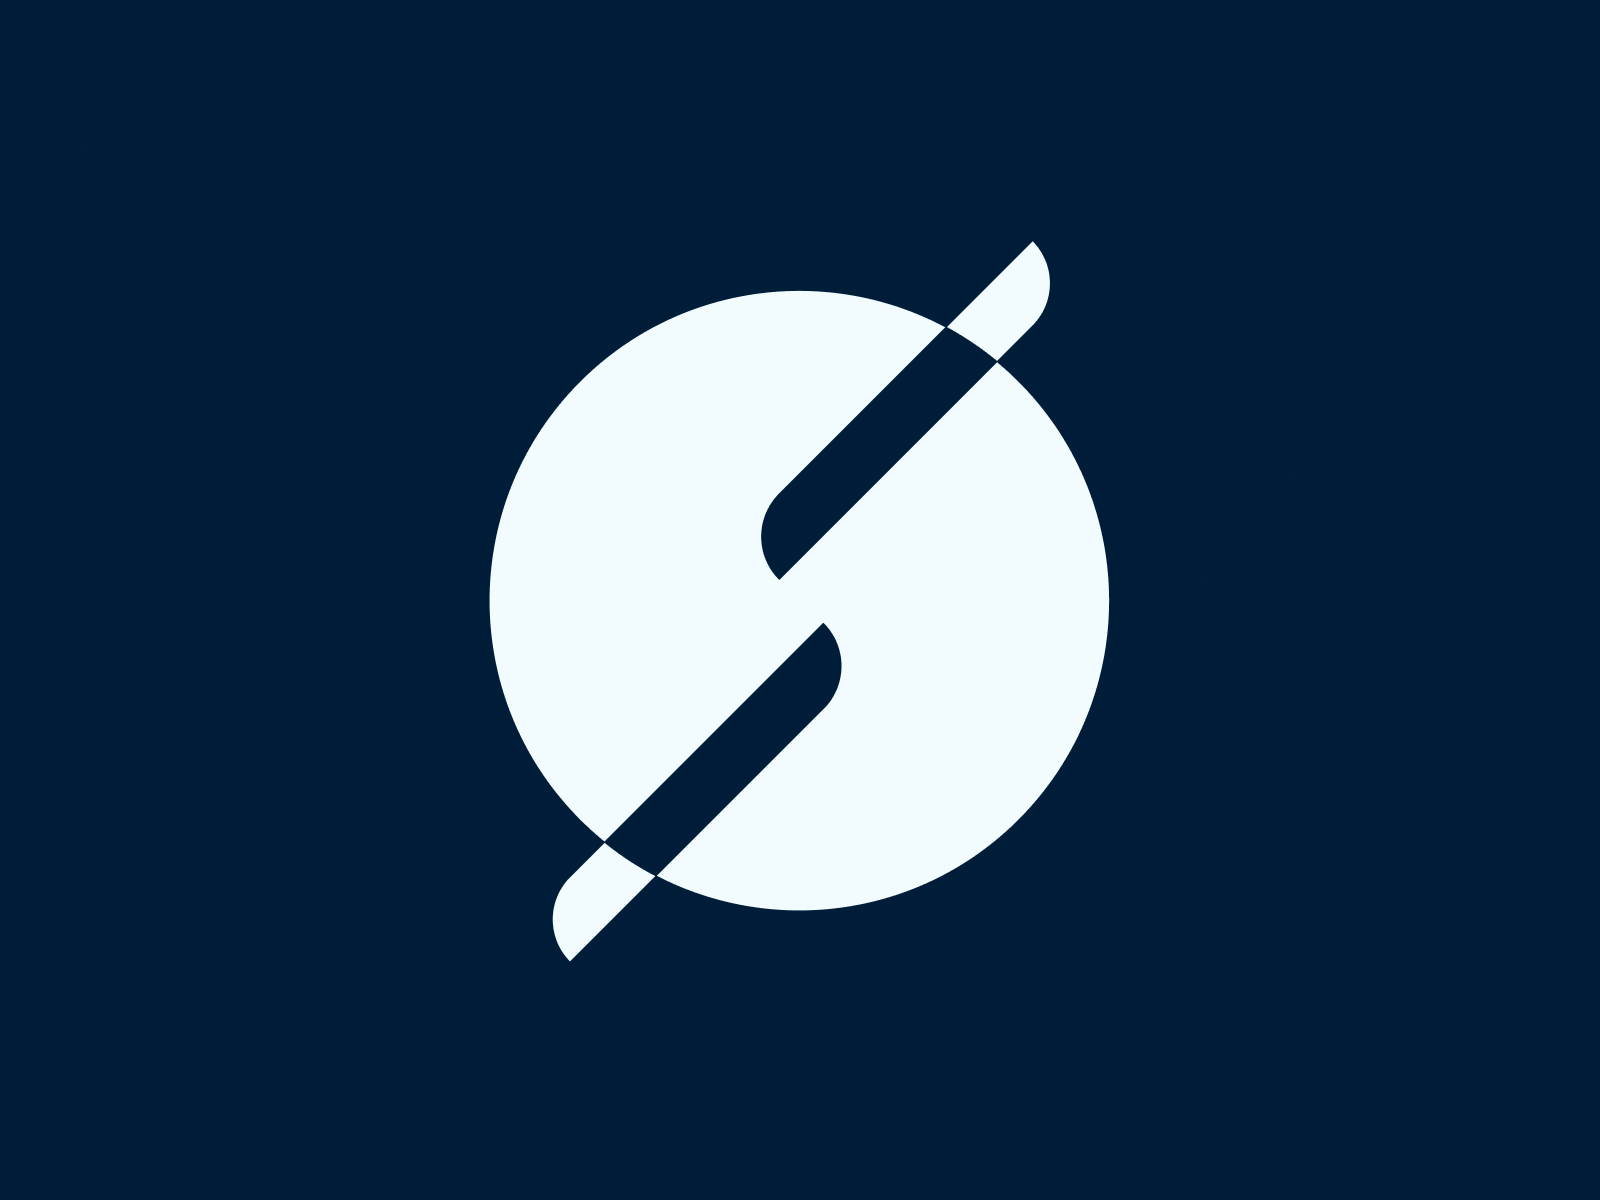 Suborbital Brand branding design figma identity illustration letter s logo mark orbit planet vector